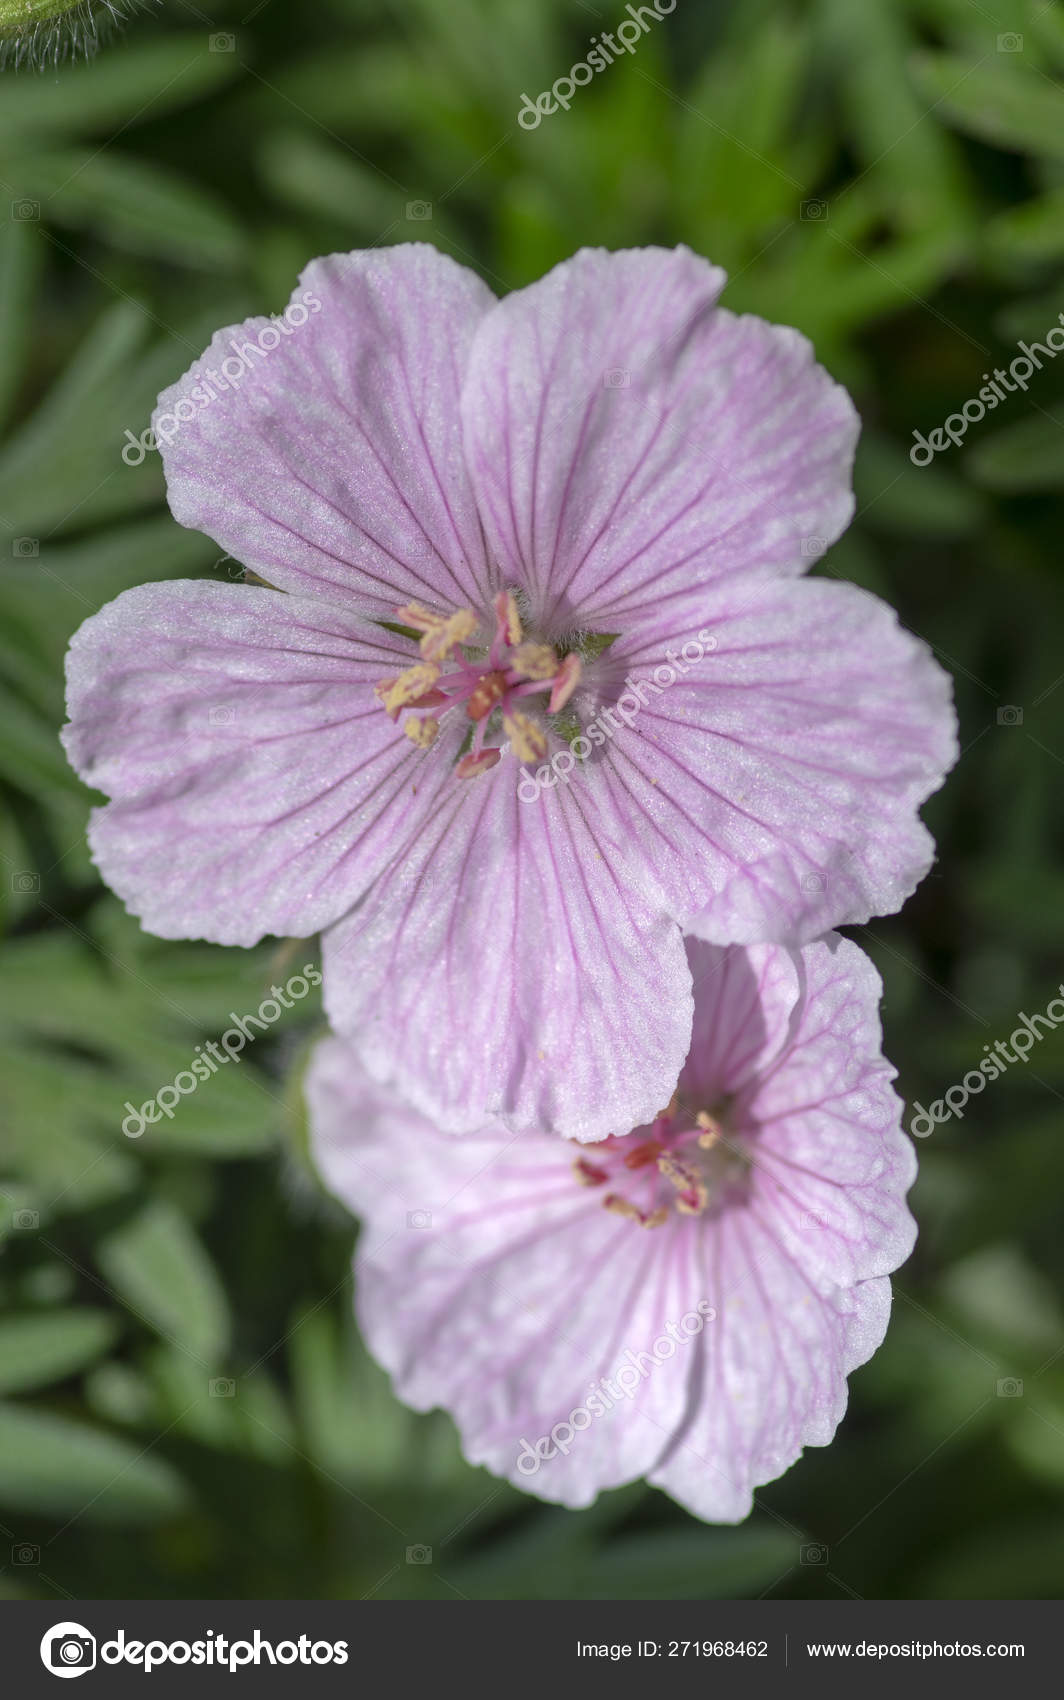 Geranium sanguineum Storchenschnabel Pink Summer